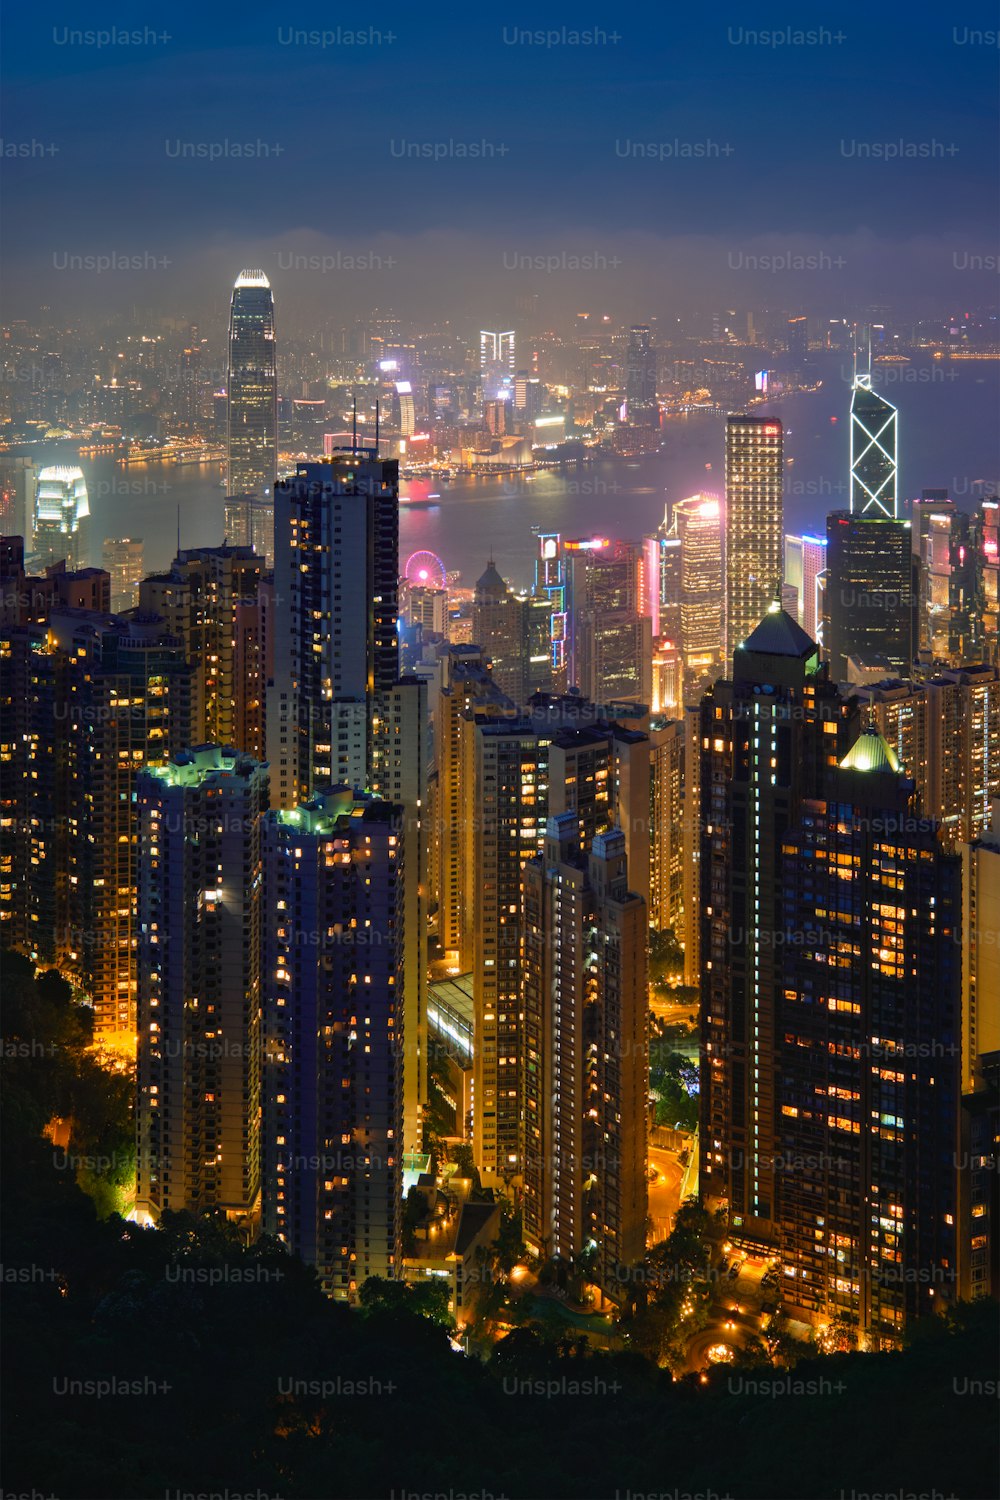 Vue célèbre de Hong Kong - Vue sur le paysage urbain des gratte-ciel de Hong Kong depuis le pic Victoria illuminé à l’heure bleue du soir. Hong Kong, Chine